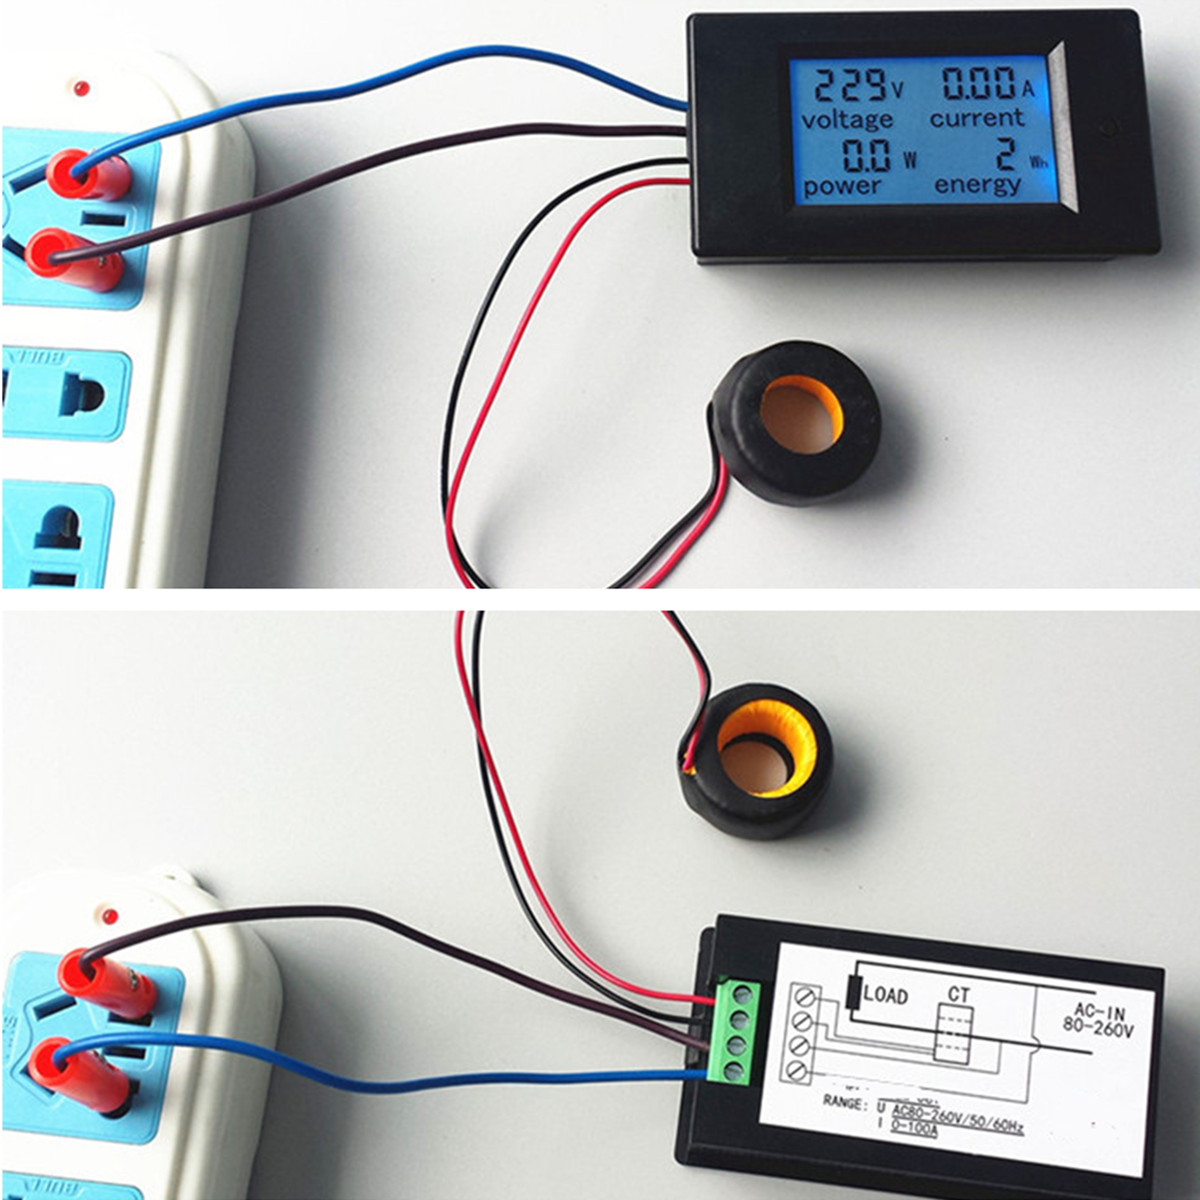 AC-80-260V-100A-Digital-Current-Voltage-Amperage-LCD-Power-Meter-DC-Volt-Amp-Testing-Gauge-Monitor-P-1328295